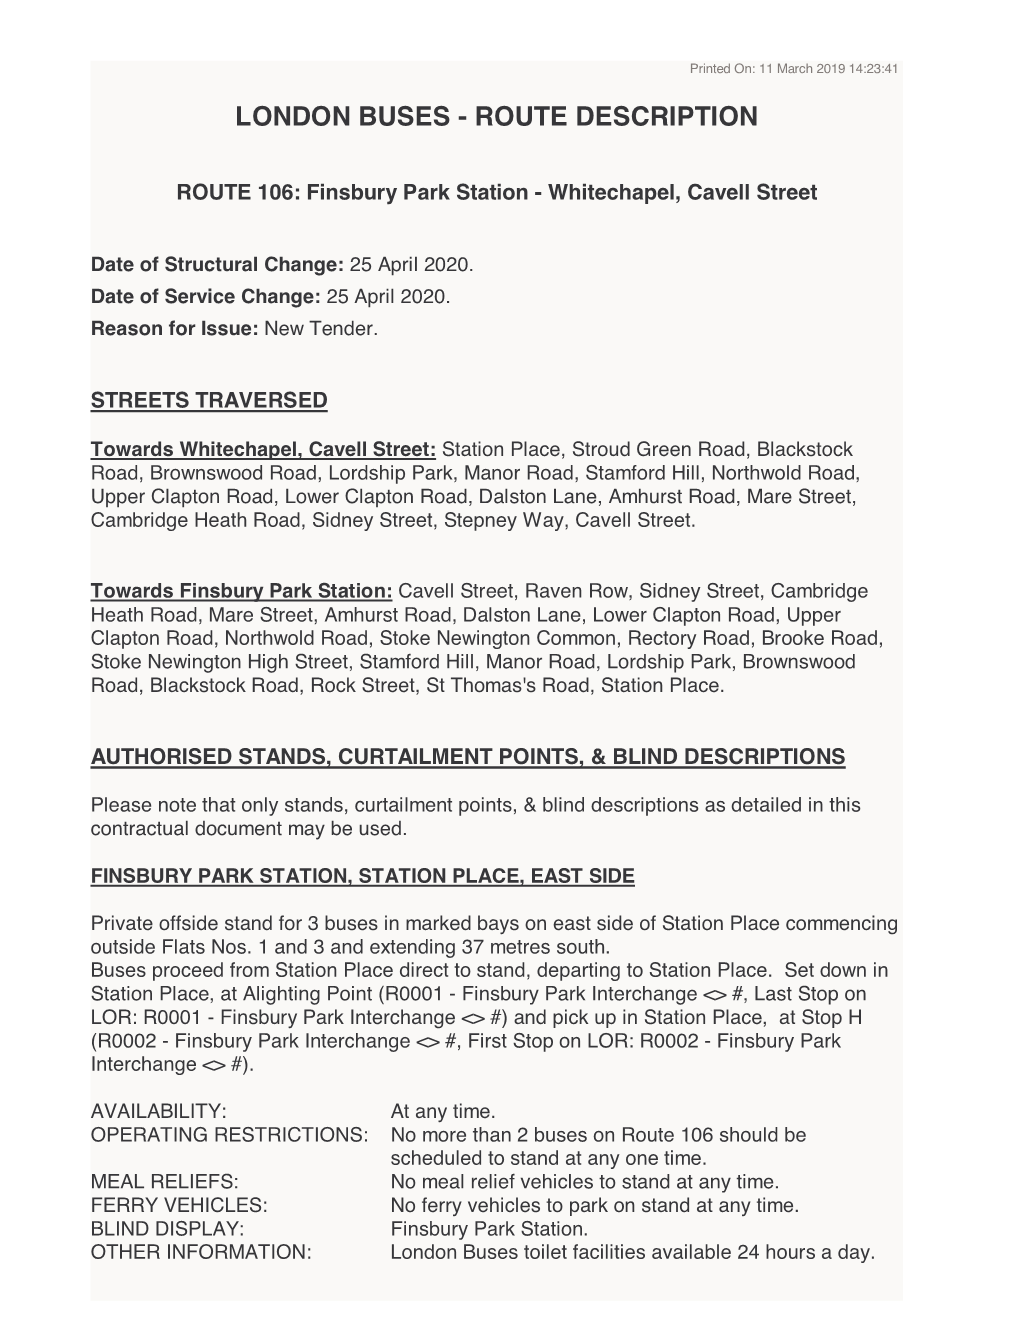 London Buses - Route Description